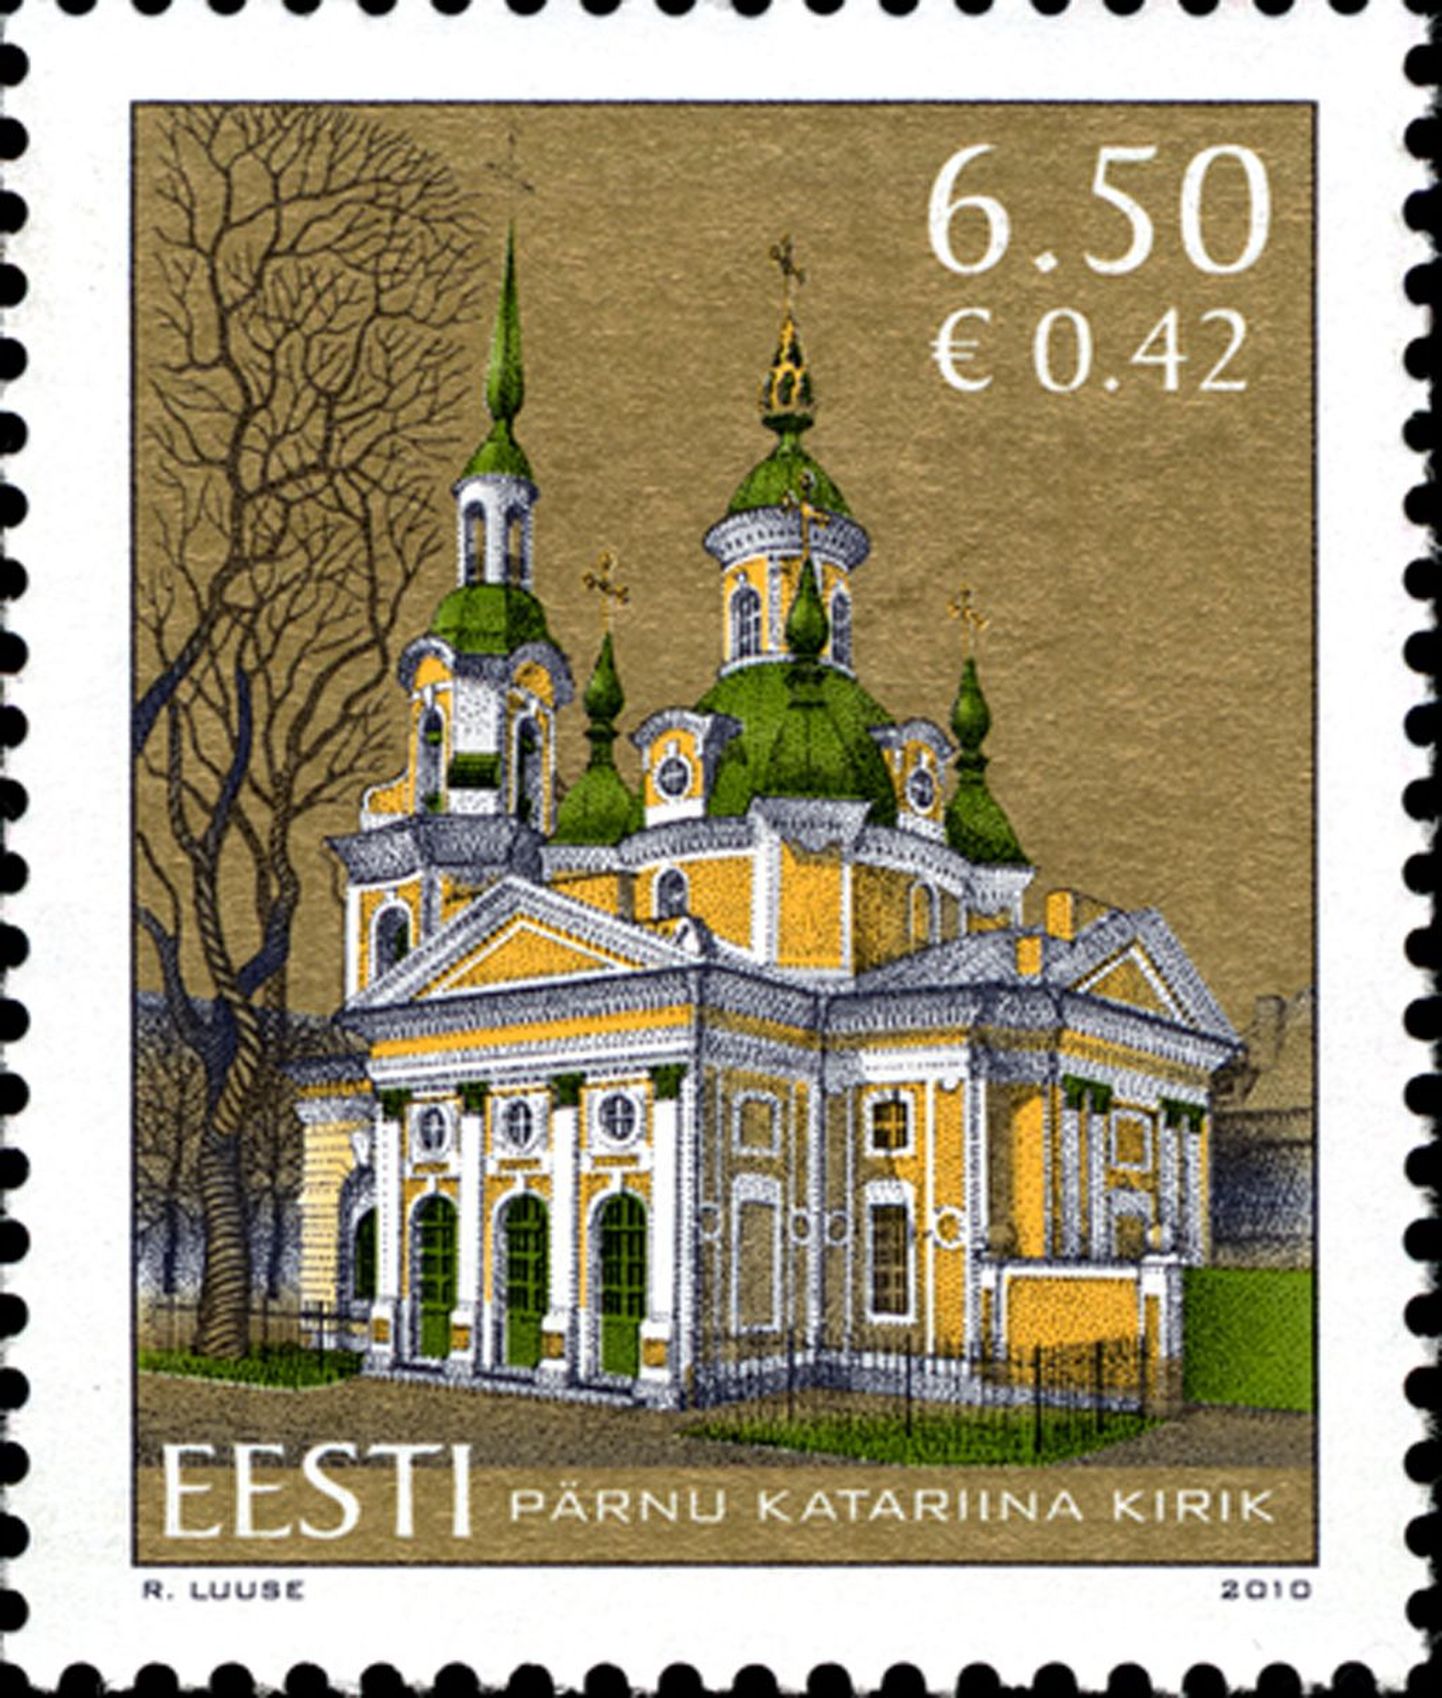 Pärnu Katariina kirikule pühendatud postmark.